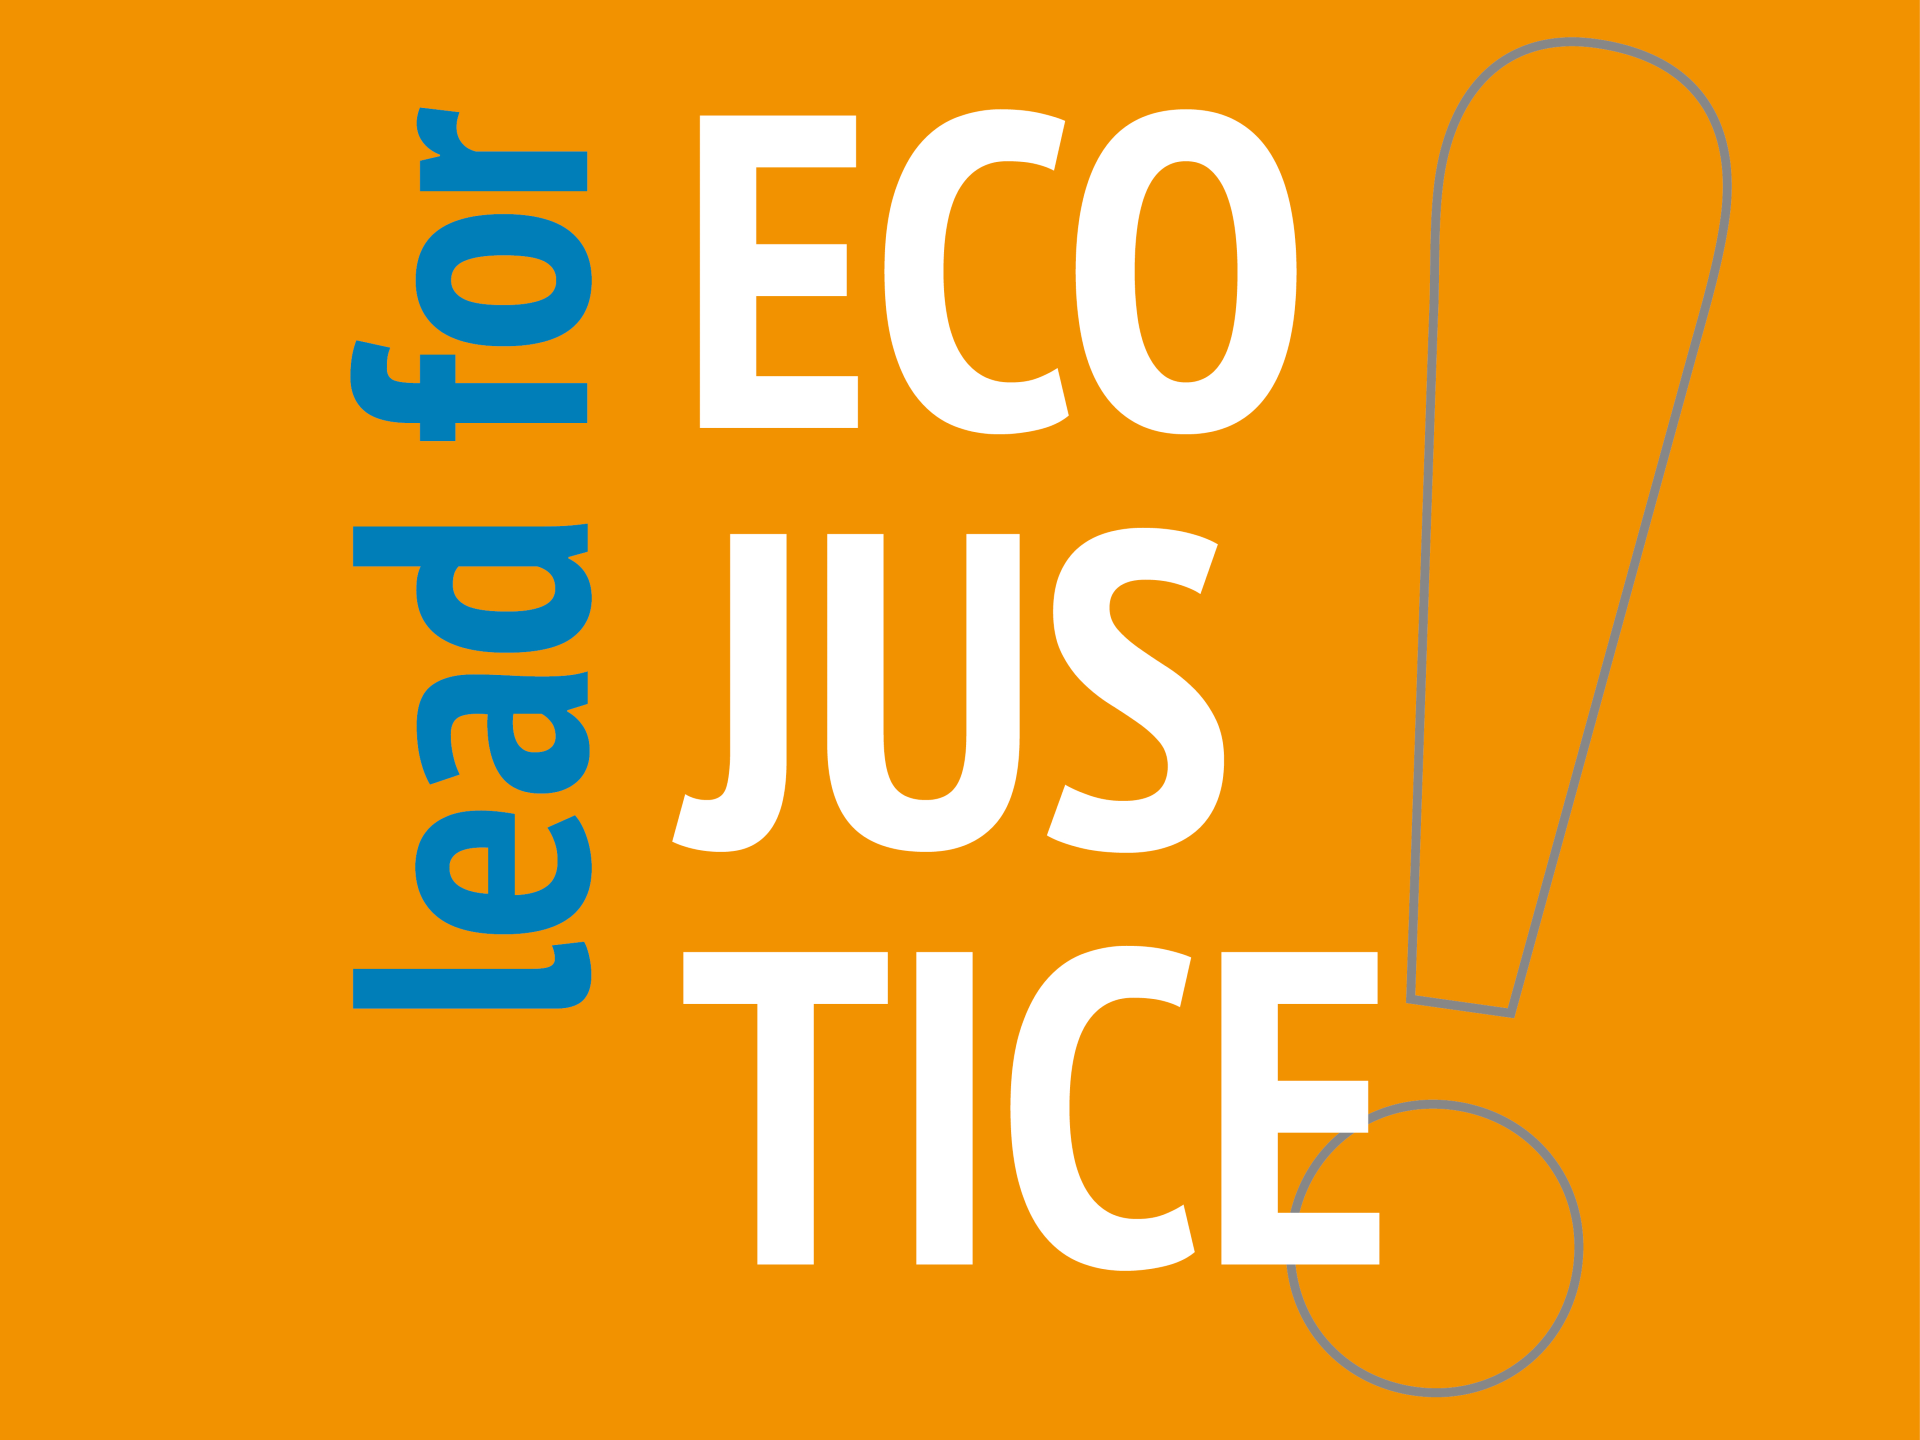 Lead for EcoJustice: Transforming School Cultures